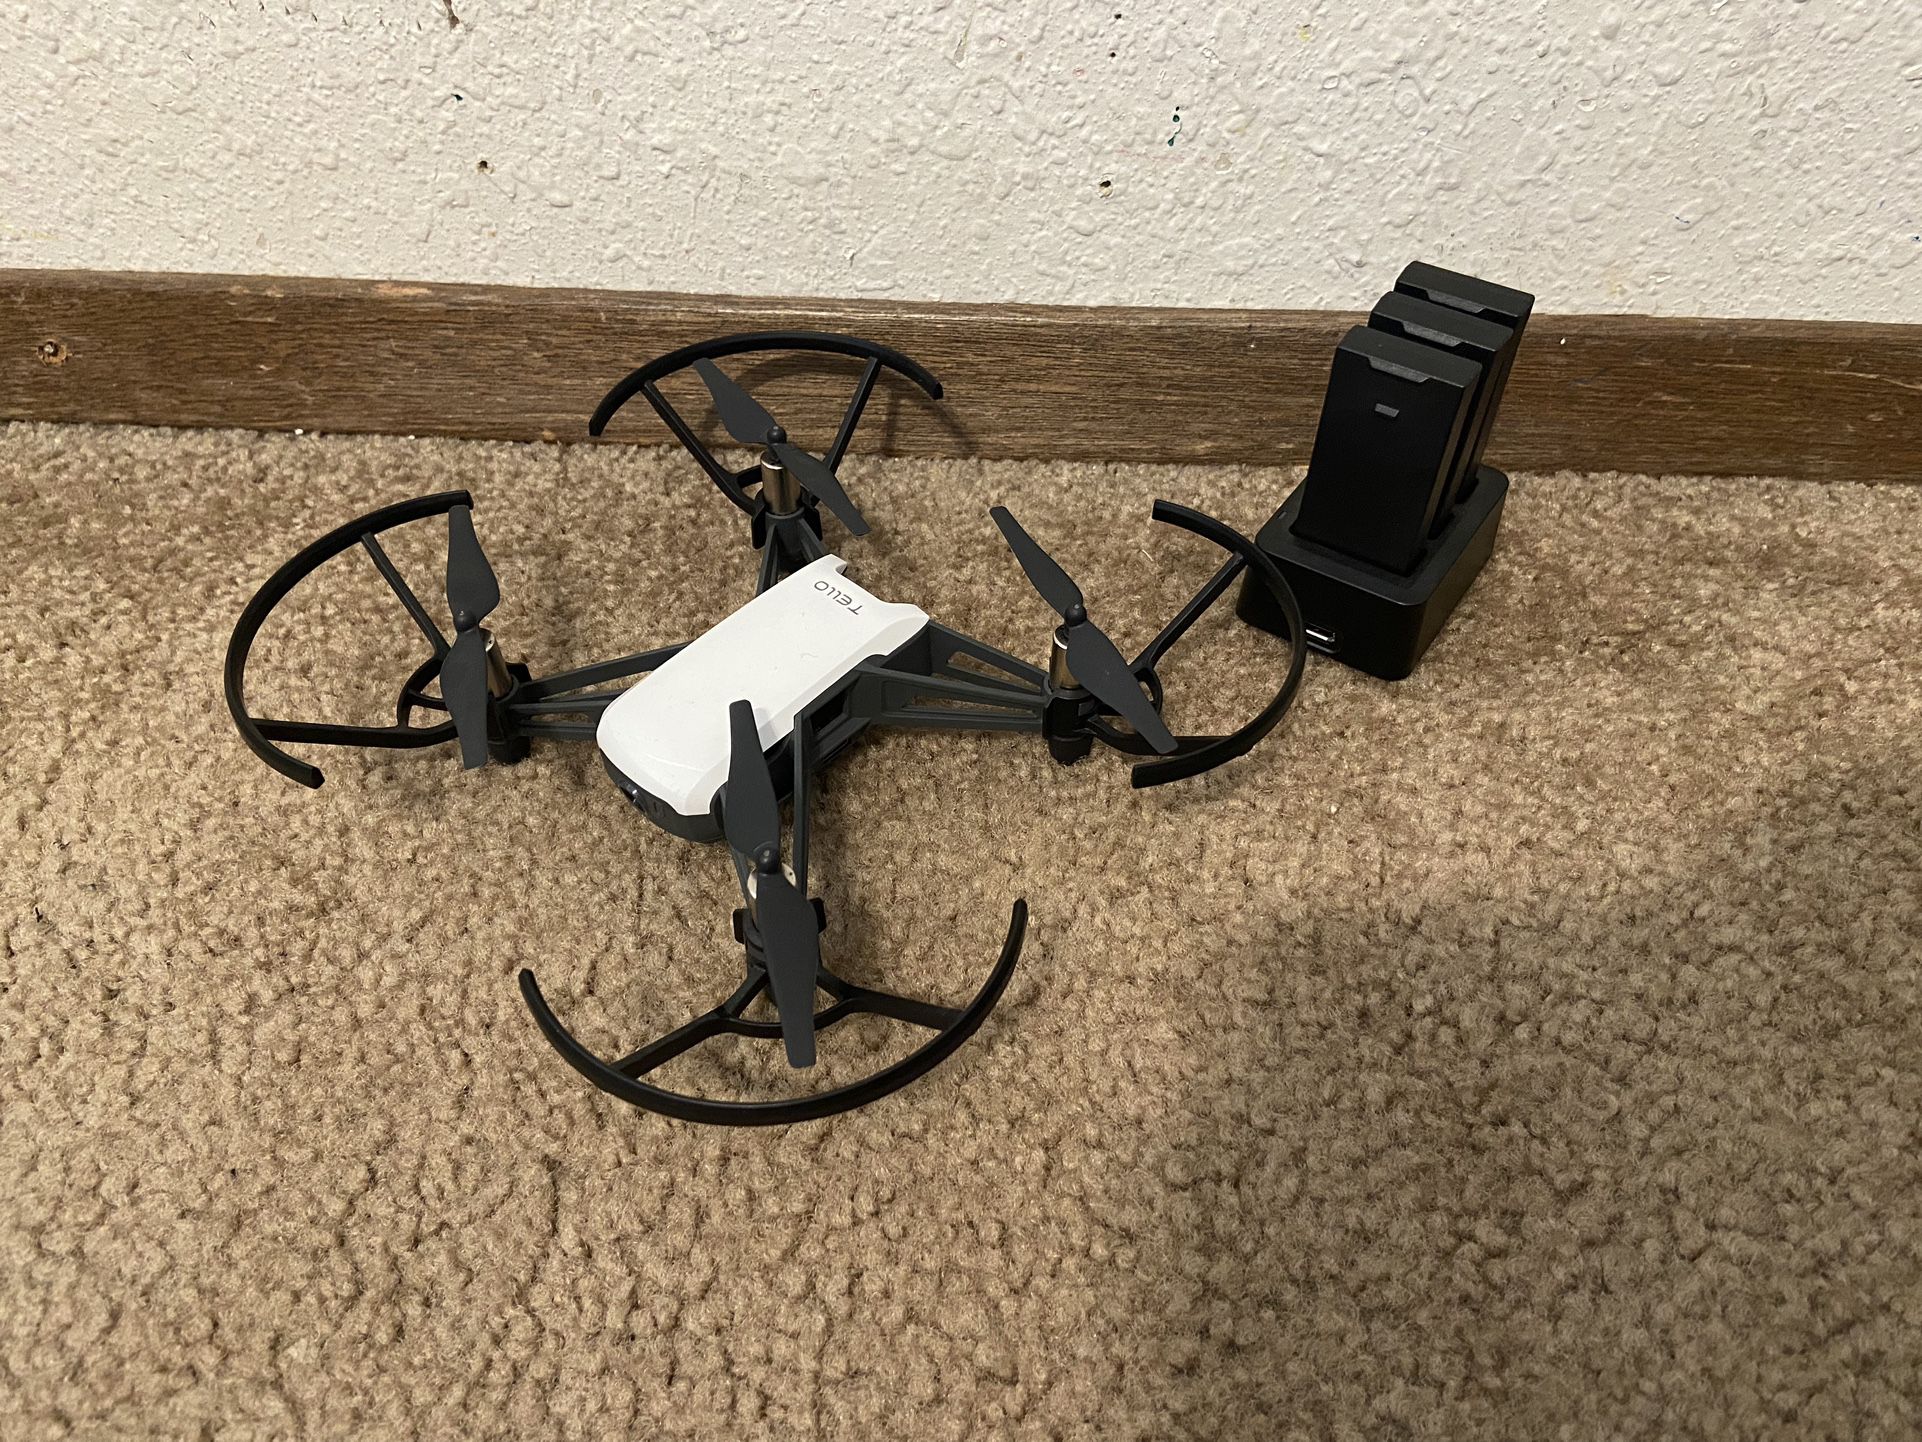 Tello Drone (read desc)